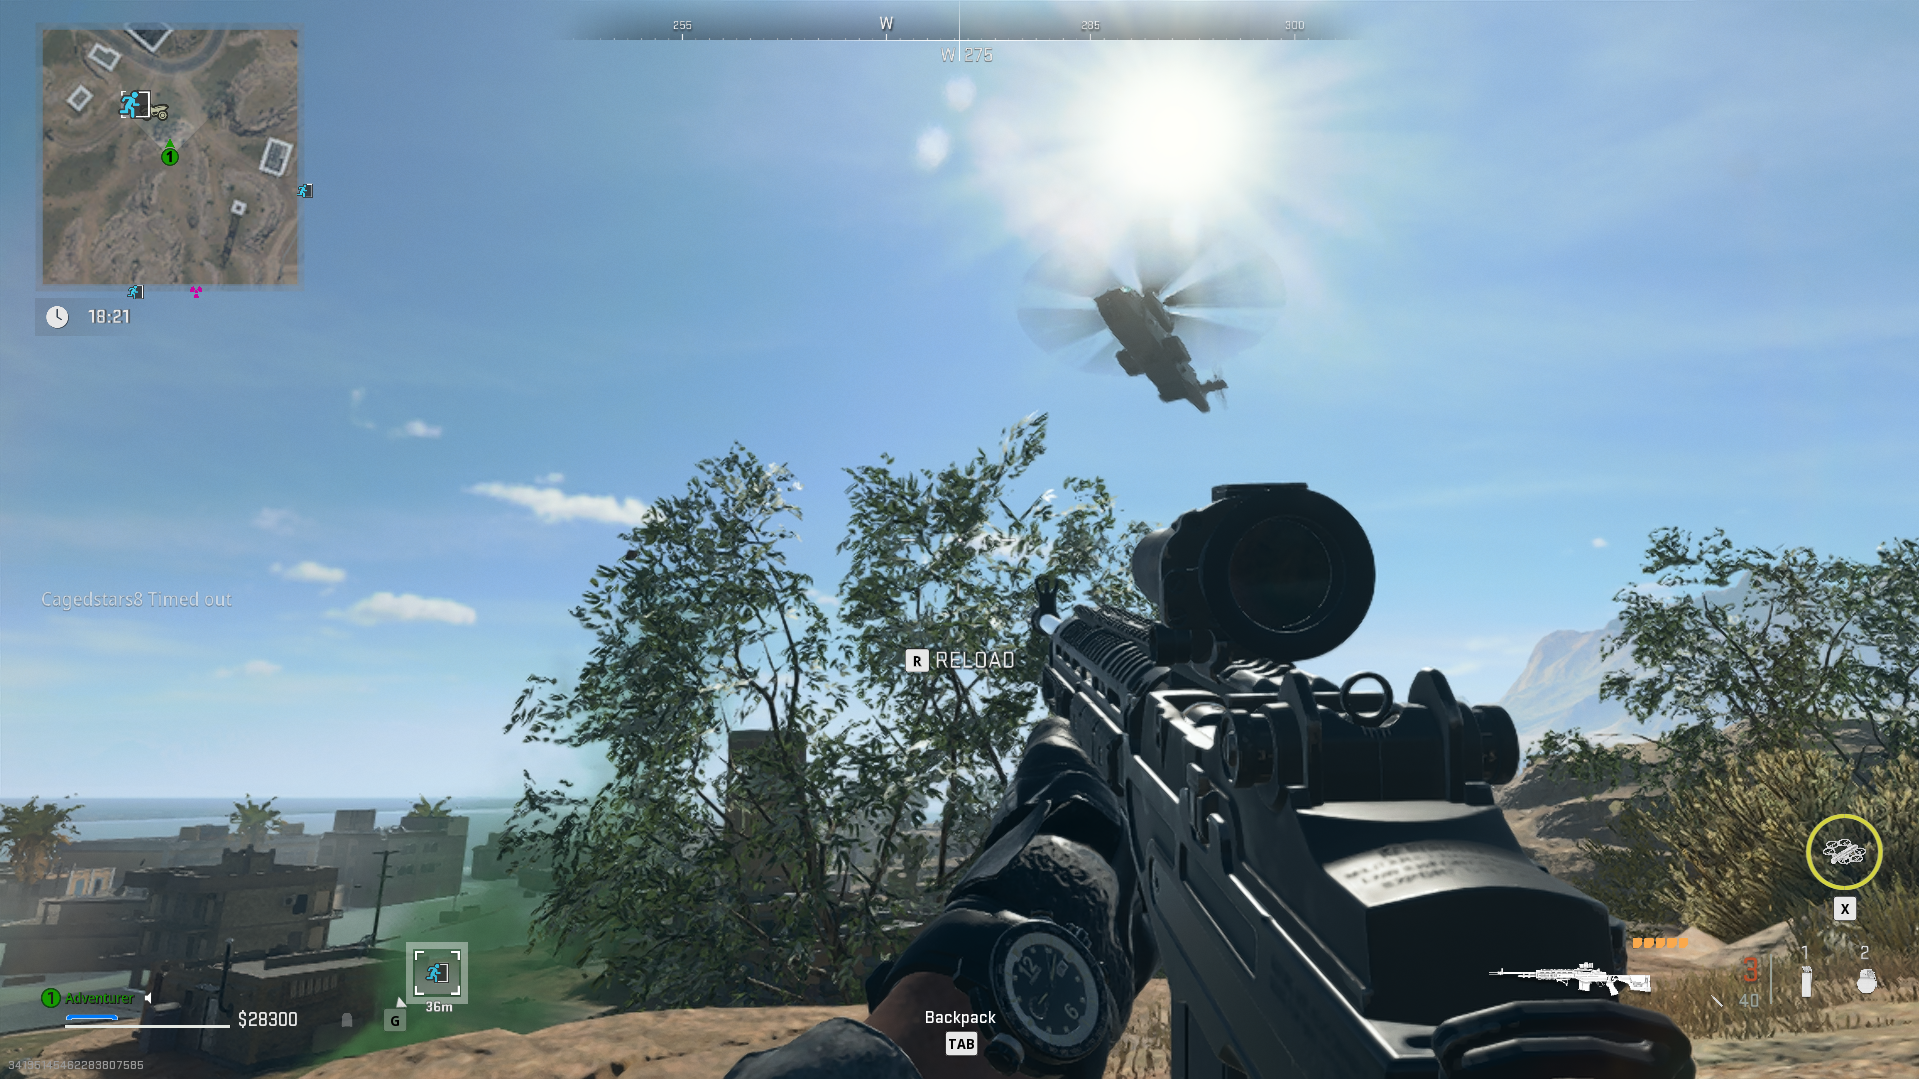 chopper arriving in warzone dmz